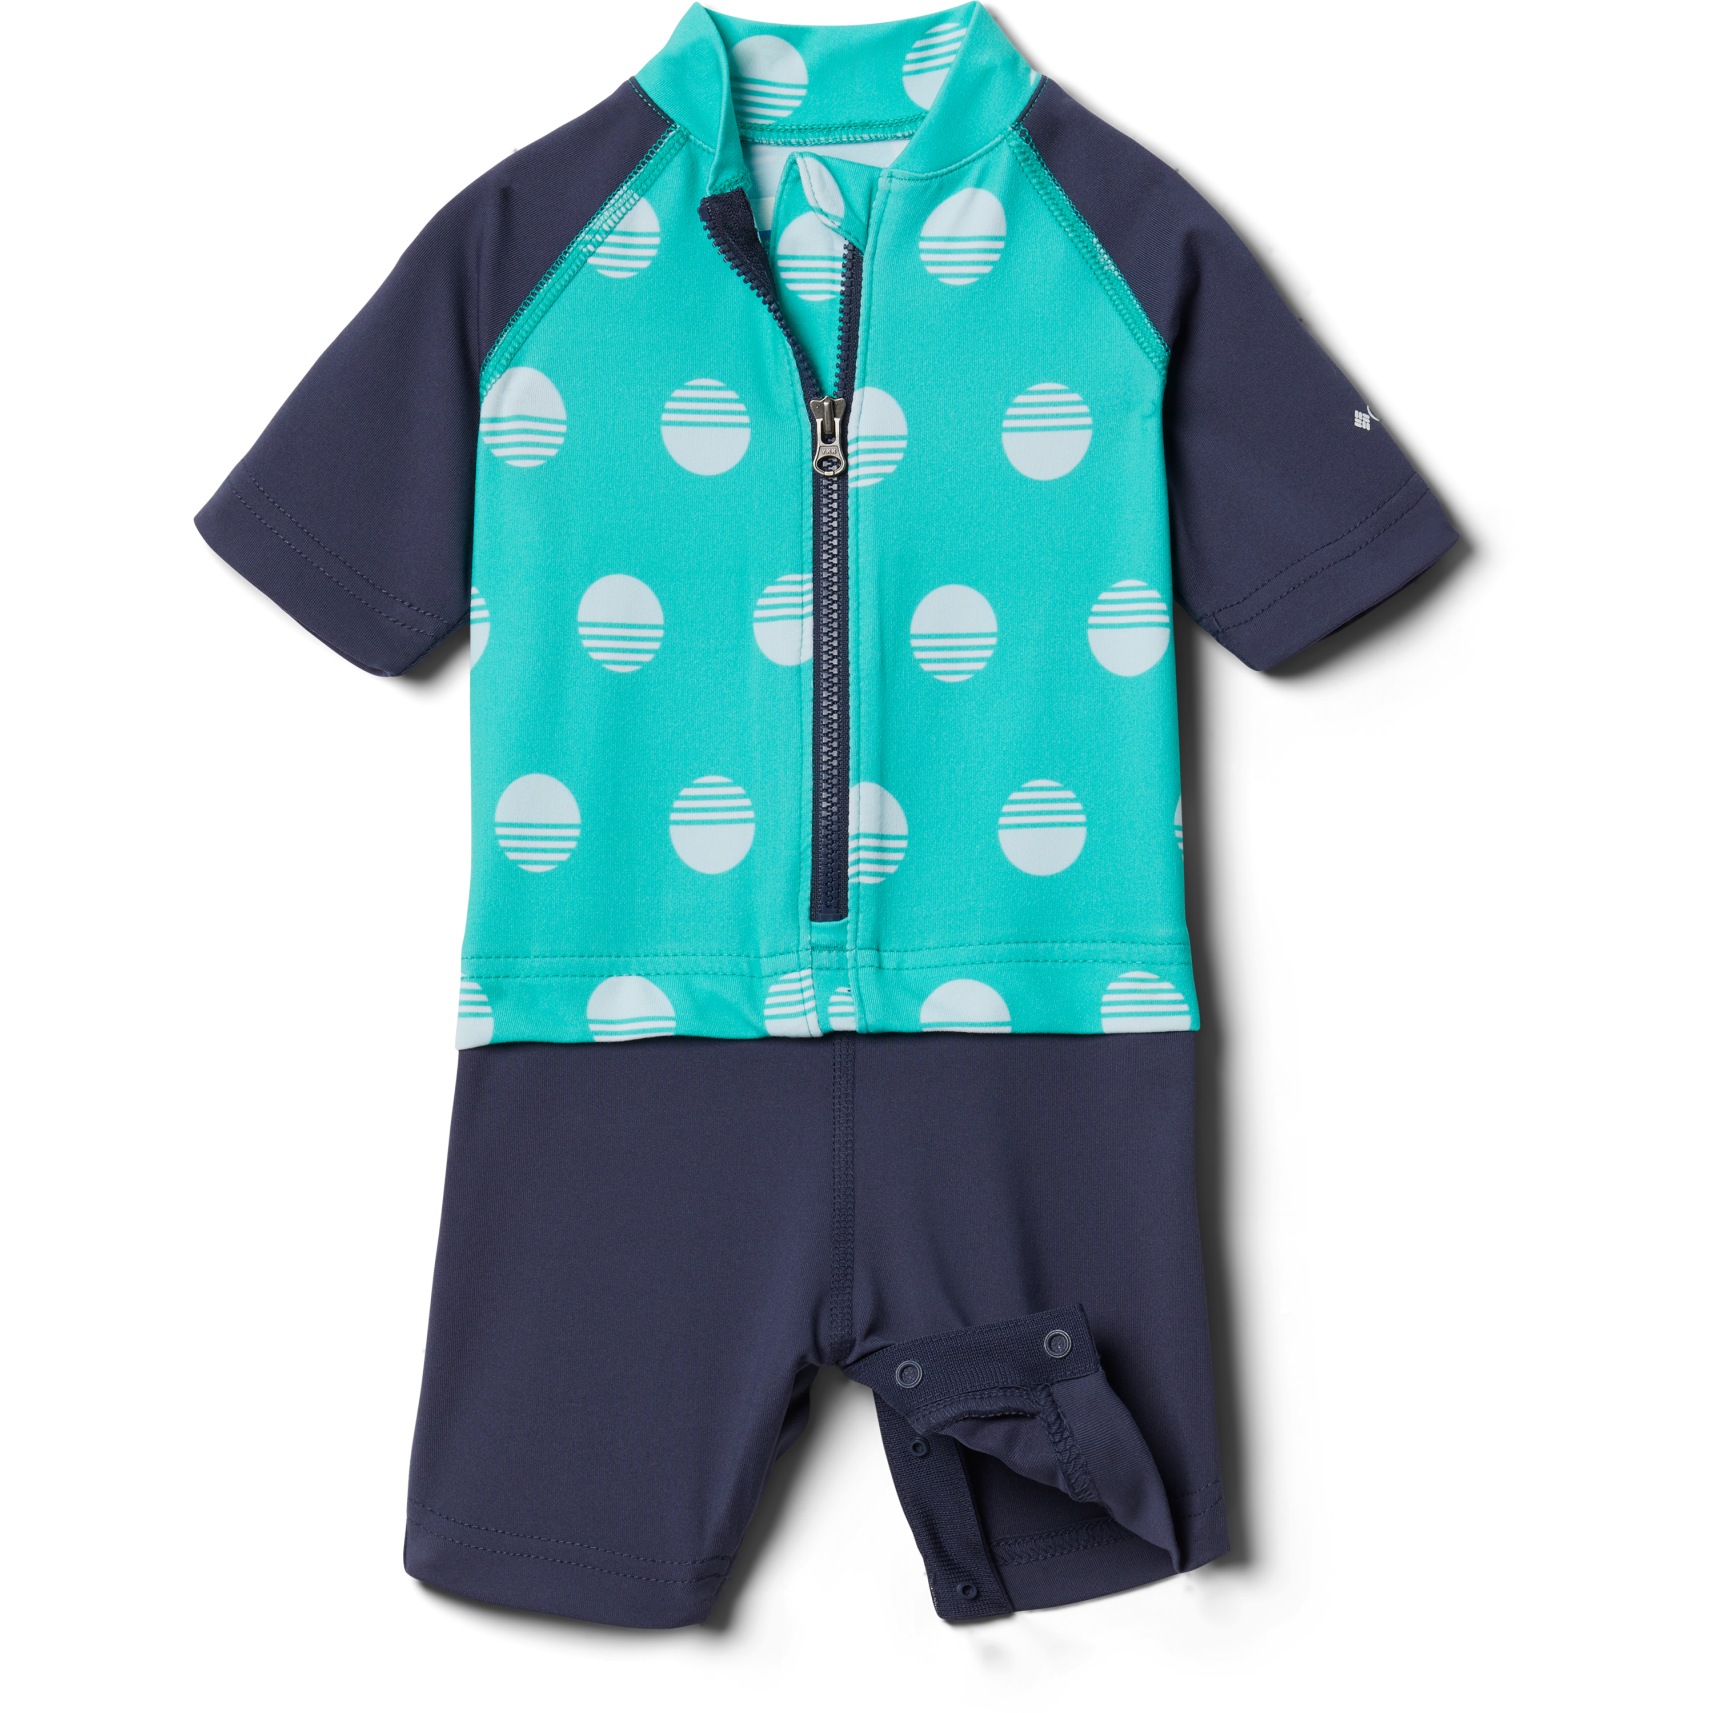 Produktbild von Columbia Sandy Shores Sonnenschutzanzug Kinder - Electric Turquoise Sundaze, Nocturnal